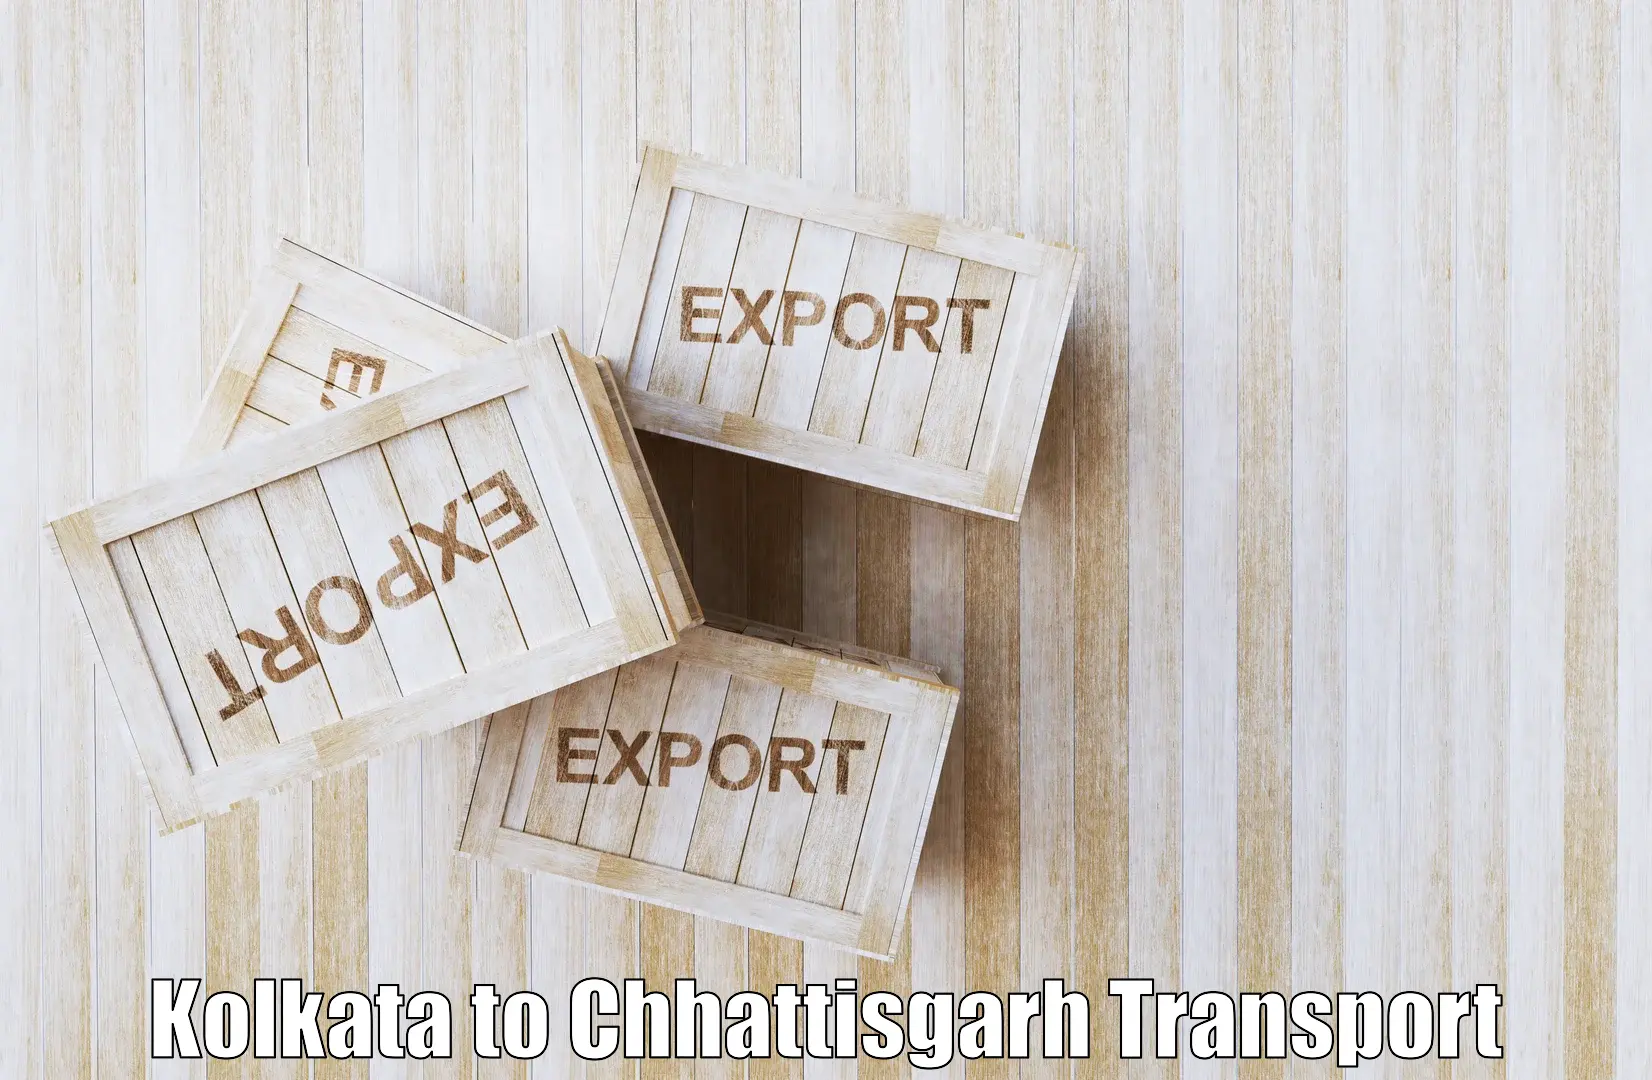 Furniture transport service Kolkata to IIT Bhilai